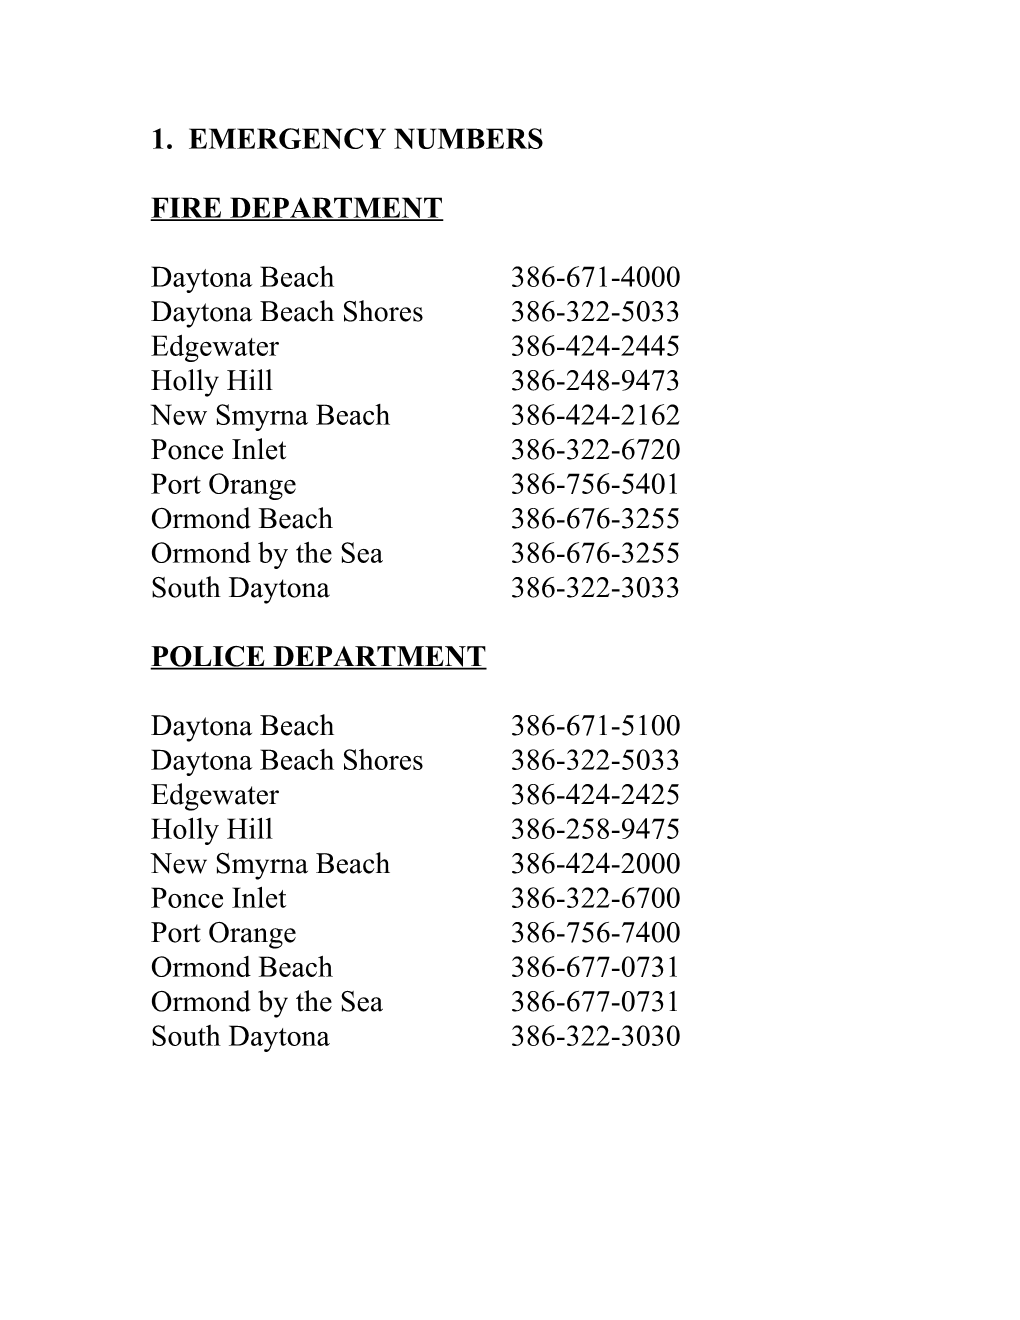 1. Emergency Numbers